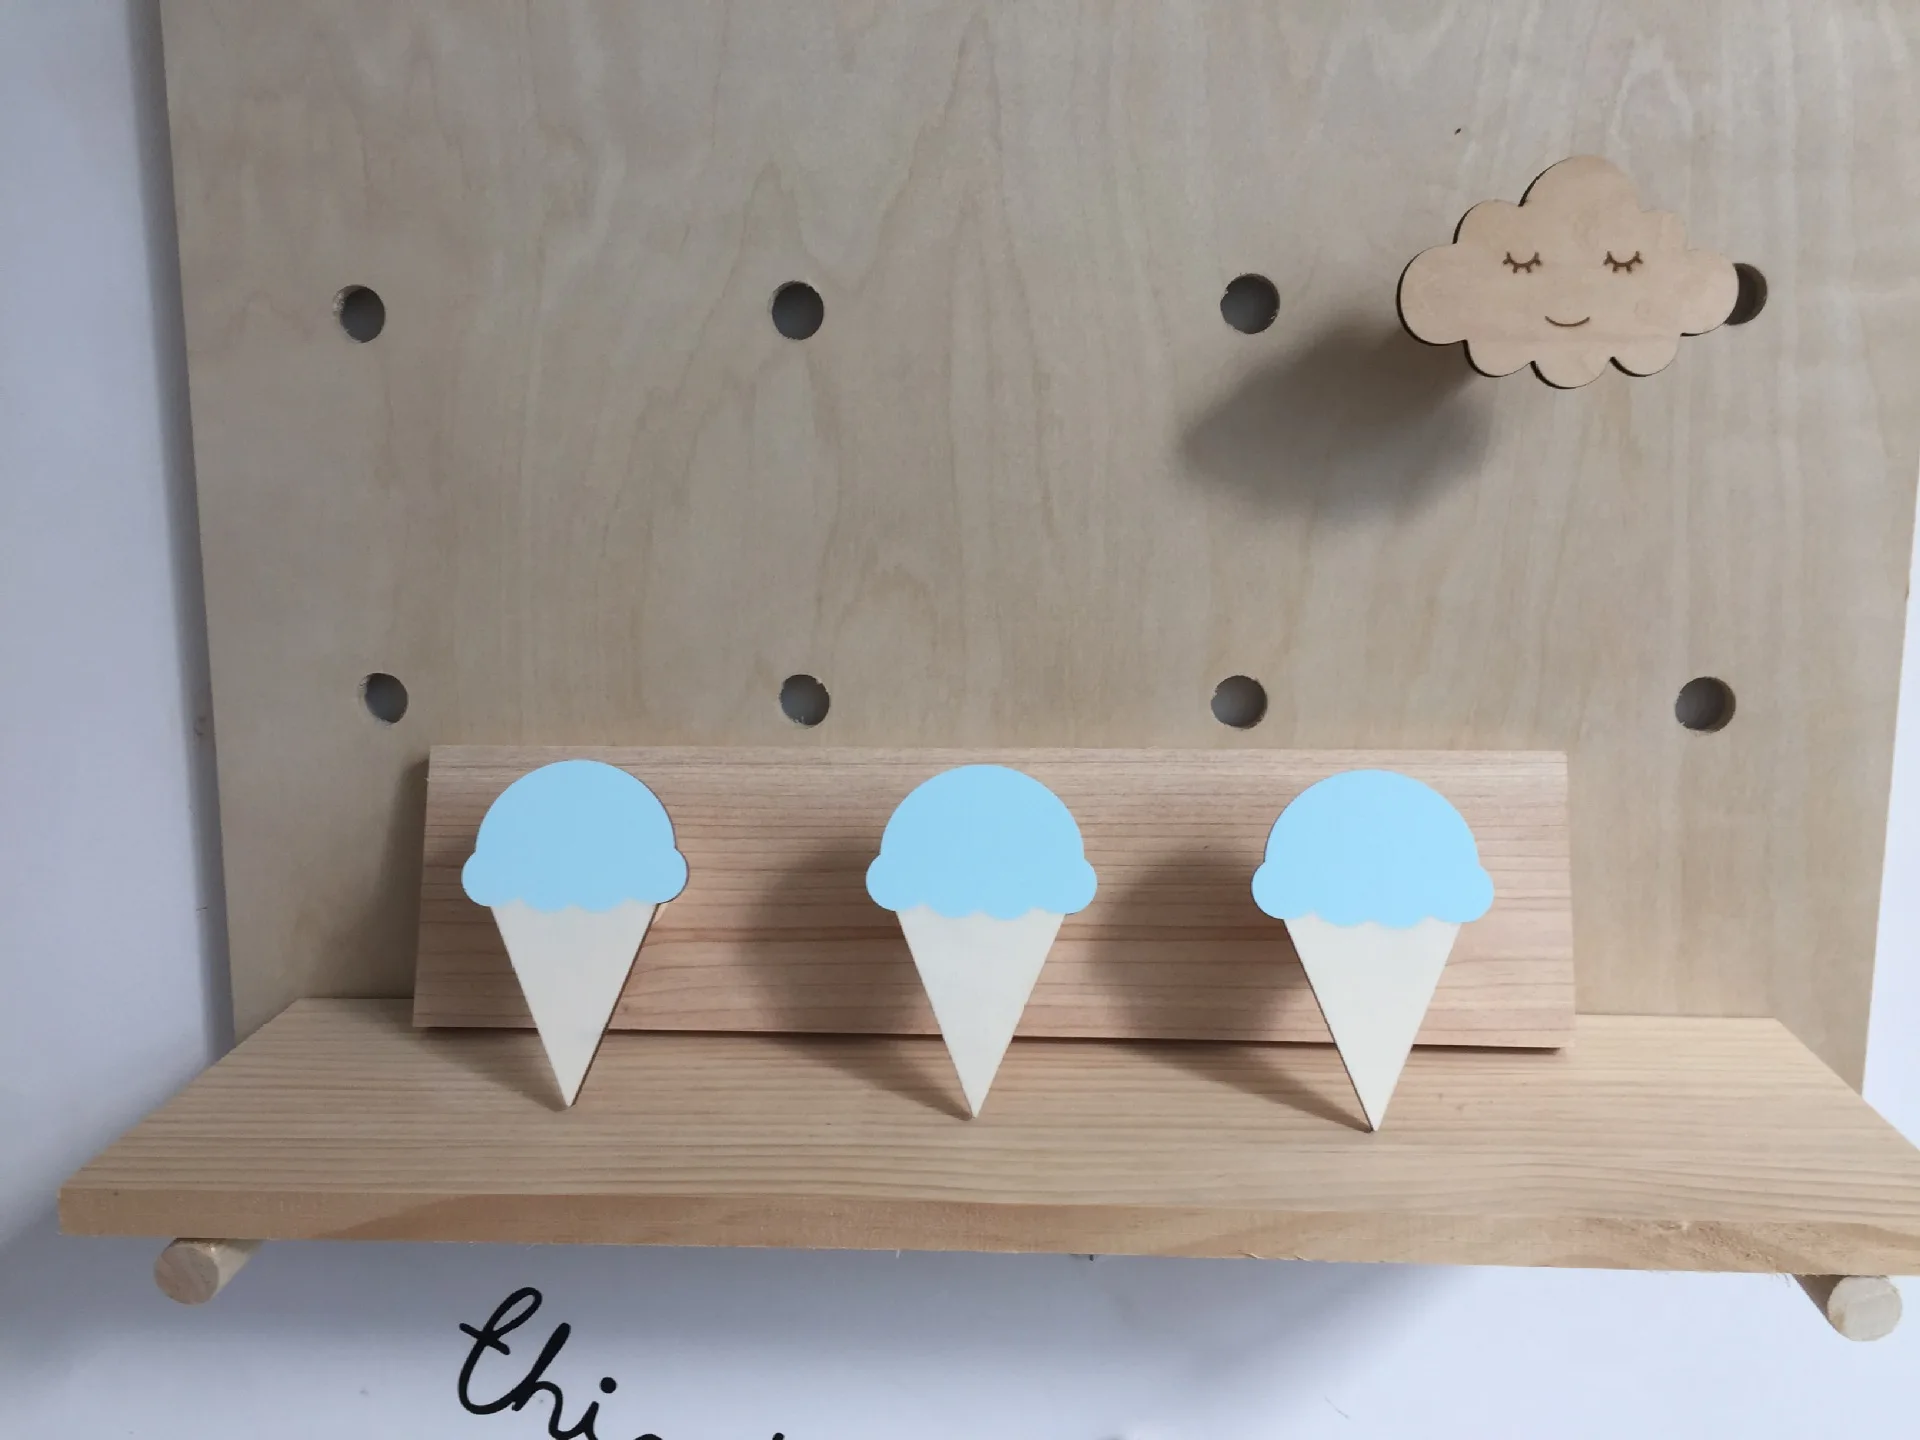 INS креативные Мультяшные деревянные настенные полки Лебедь полки магазин дисплей стенд держатель для мелочей Детская комната украшения крюк для хранения - Цвет: Three blue ice cream